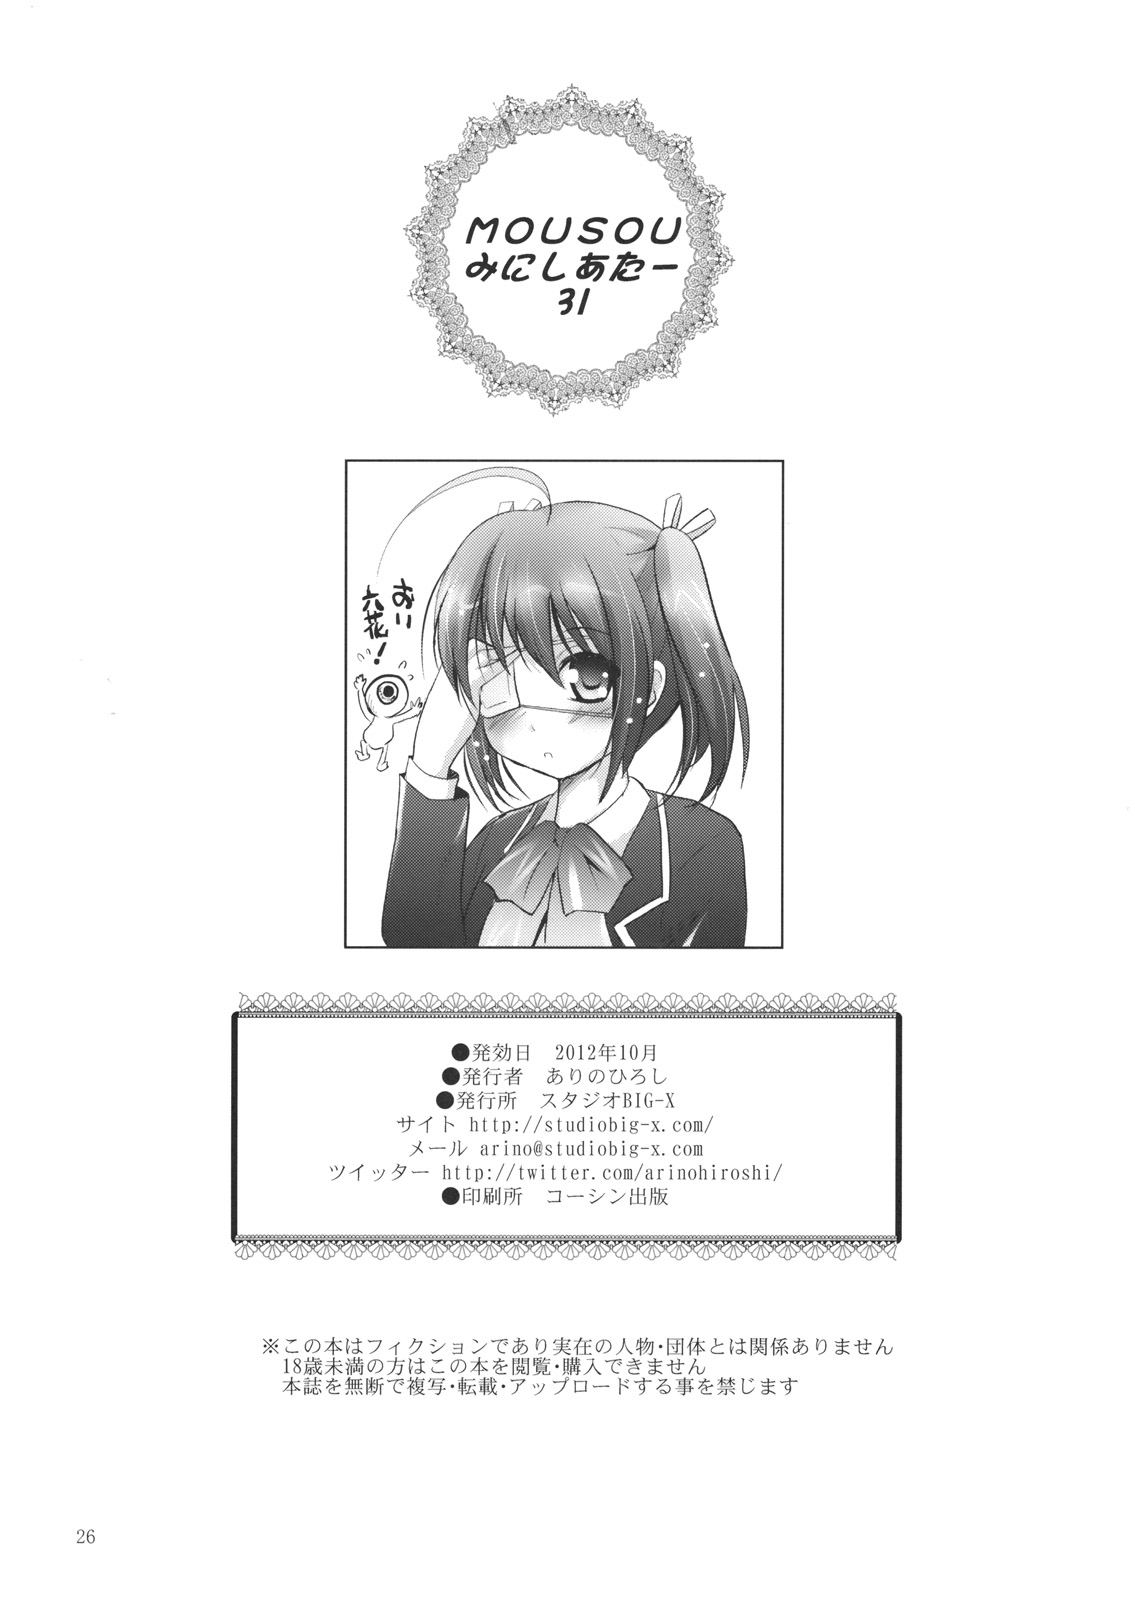 (SC57) [Studio BIG-X (Arino Hiroshi)] MOUSOU Mini Theater 31 (Chuunibyou demo Koi ga Shitai!) page 25 full